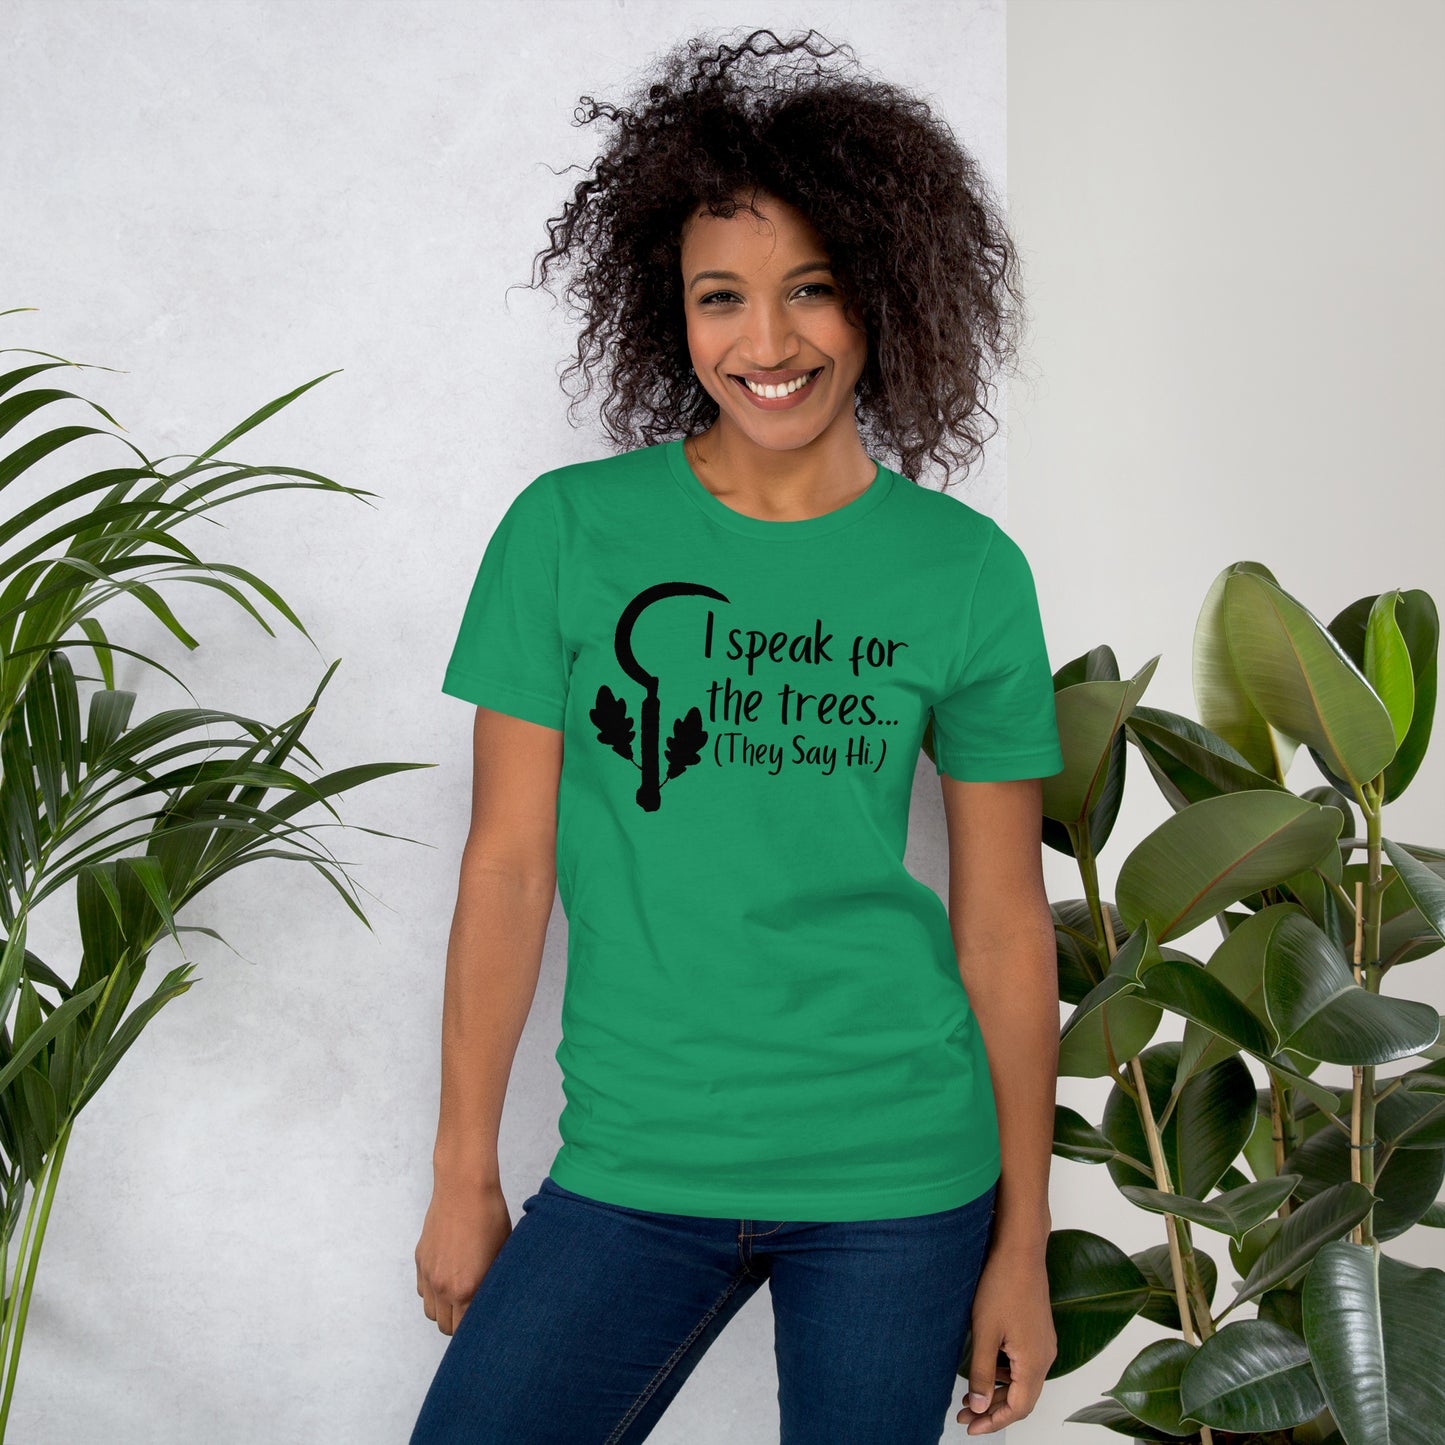 I speak for the trees Druid Class shirt - Unisex t-shirt